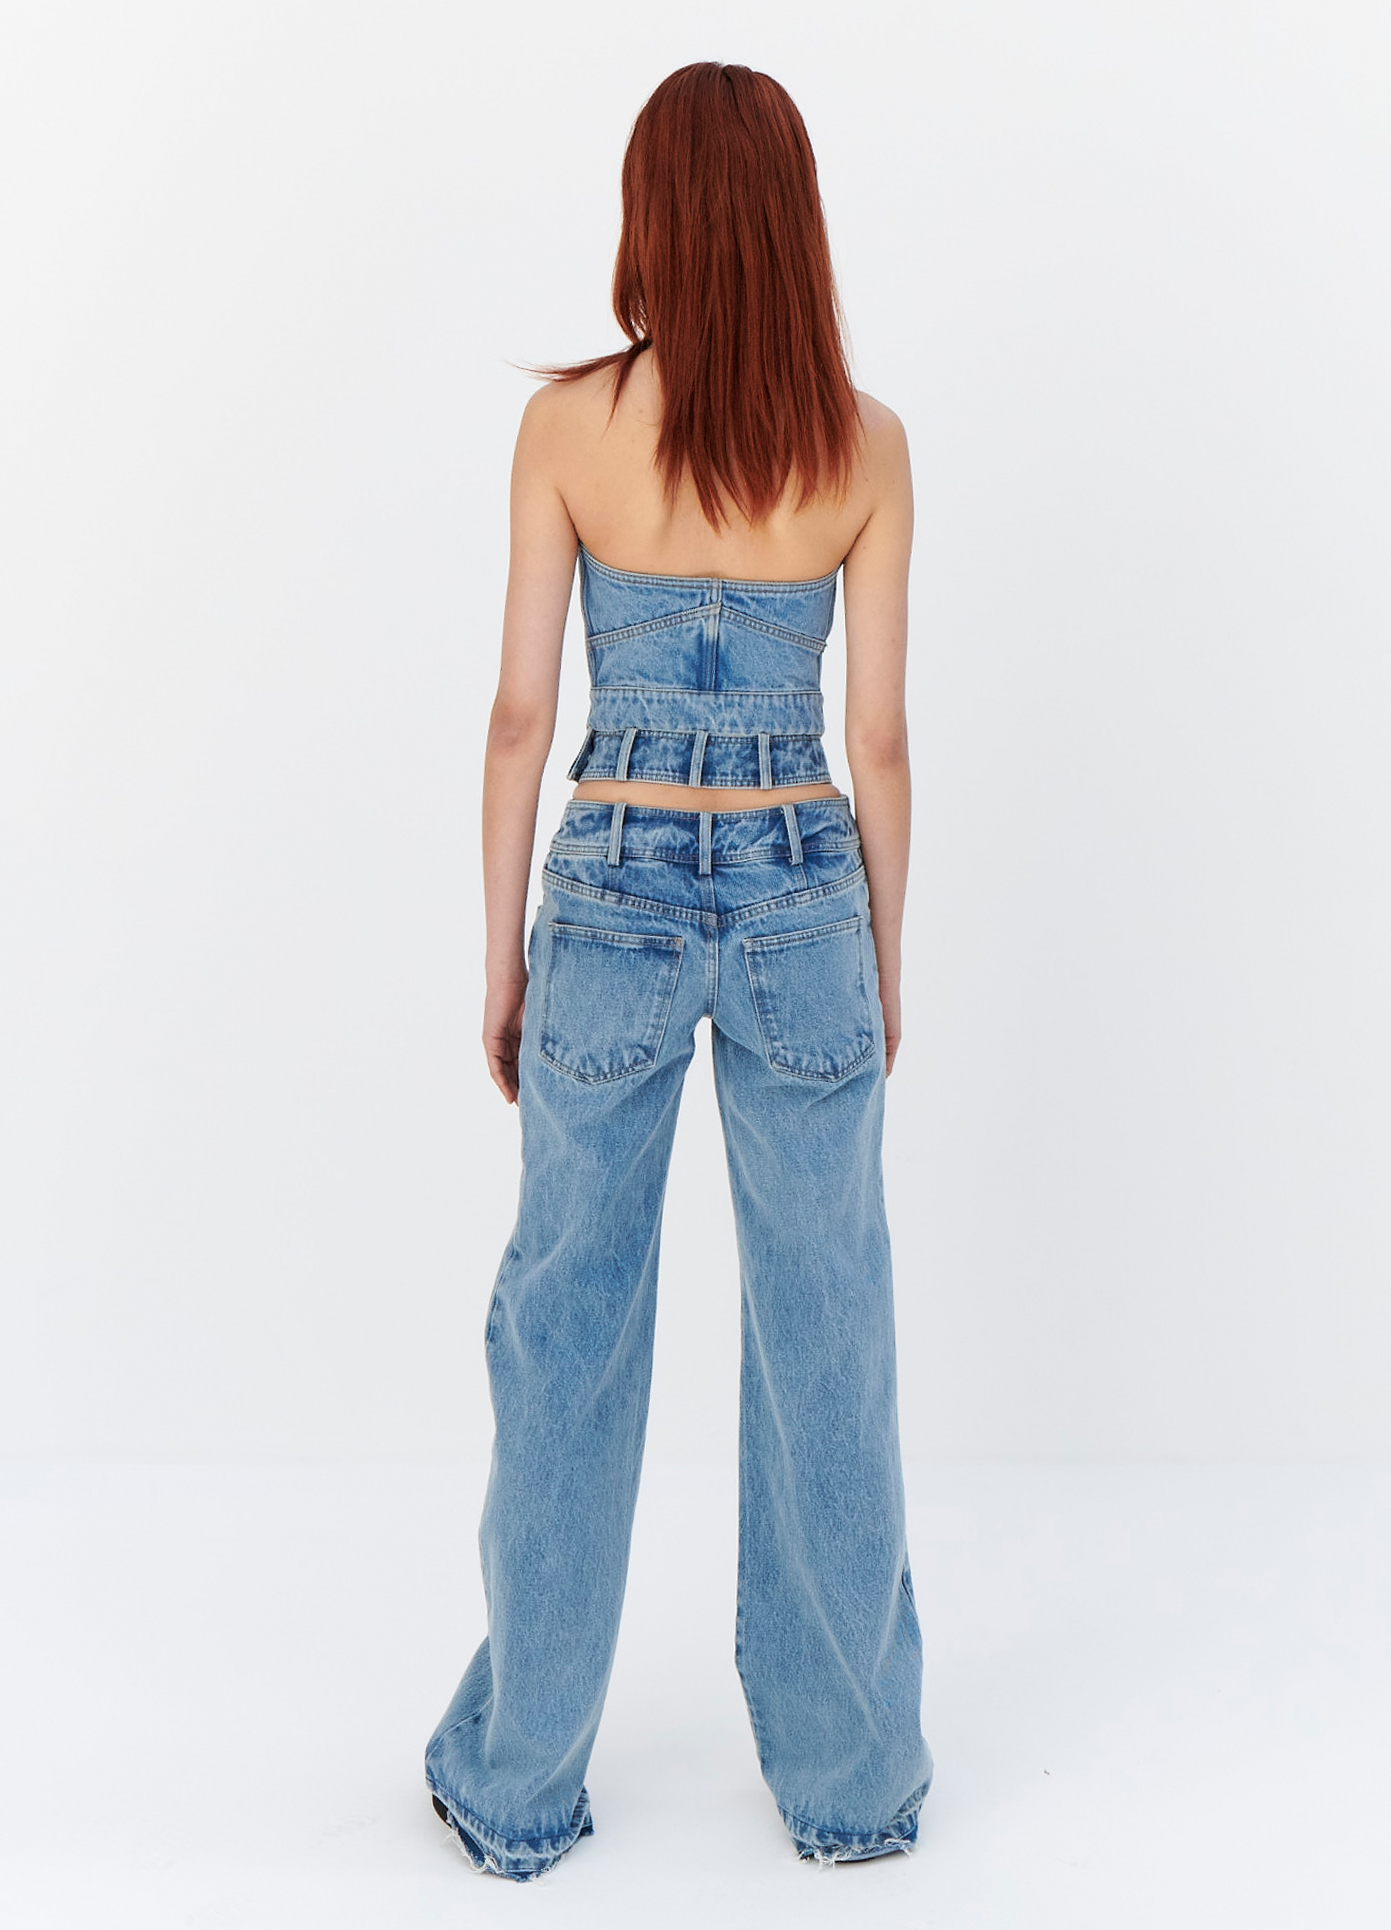 MONSE Criss Cross Waist Jeans in Indigo on model full back view